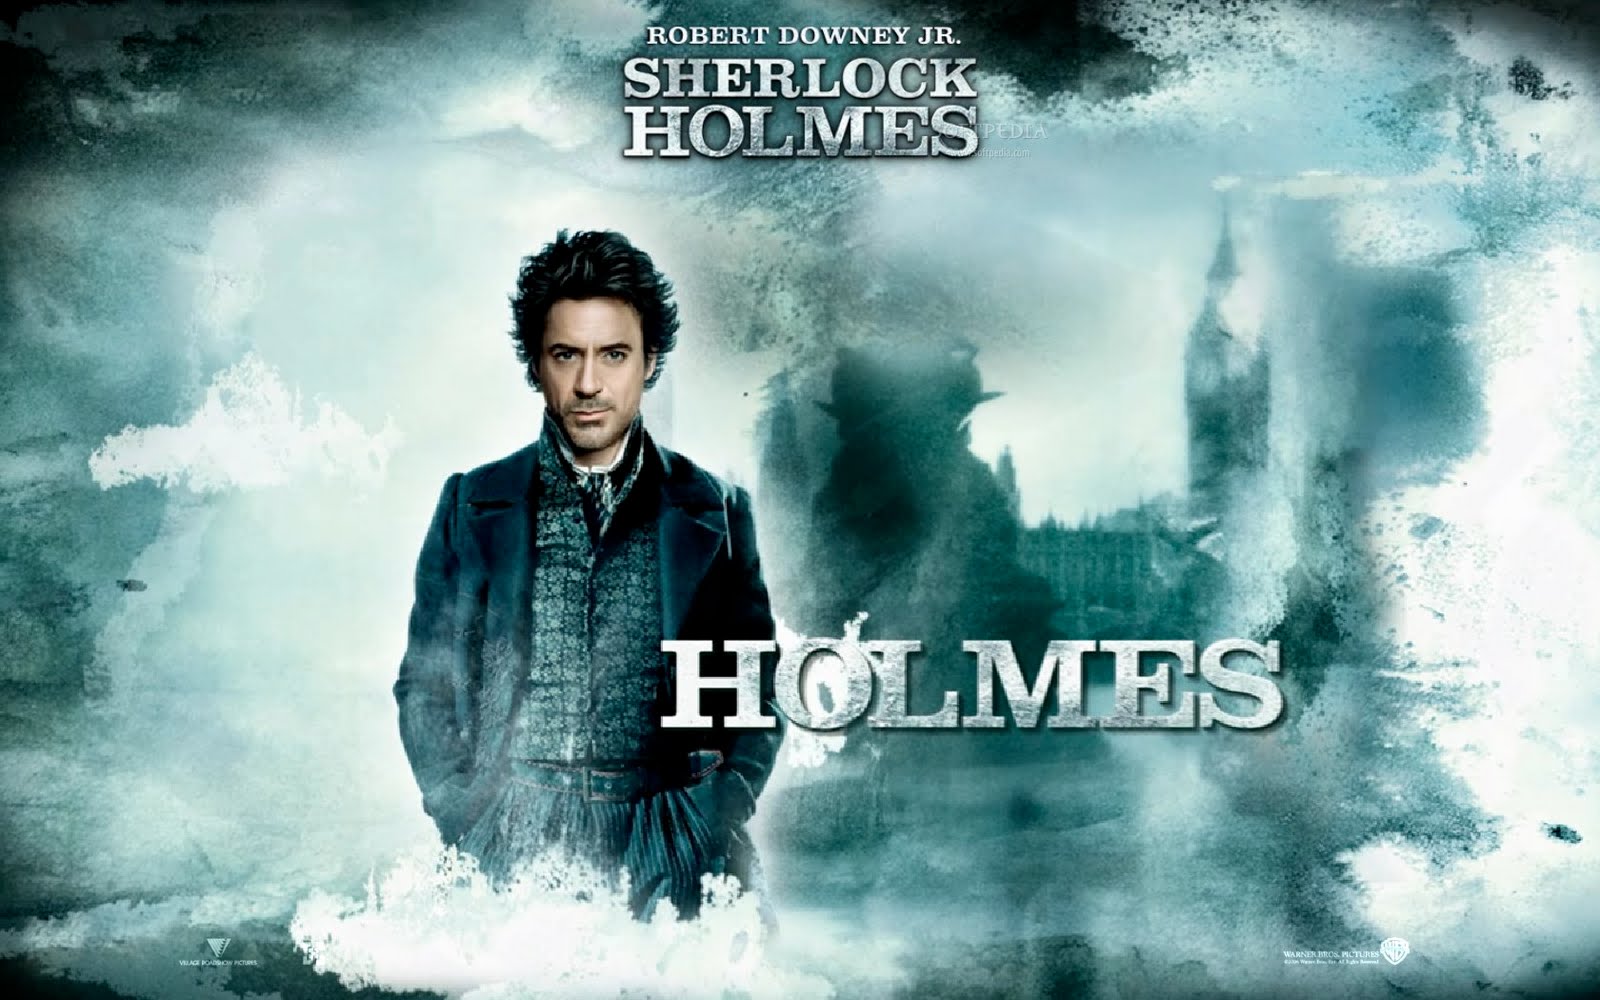 셜록 홈즈의 hd 벽지,영화,포스터,앨범 표지,폰트,하늘